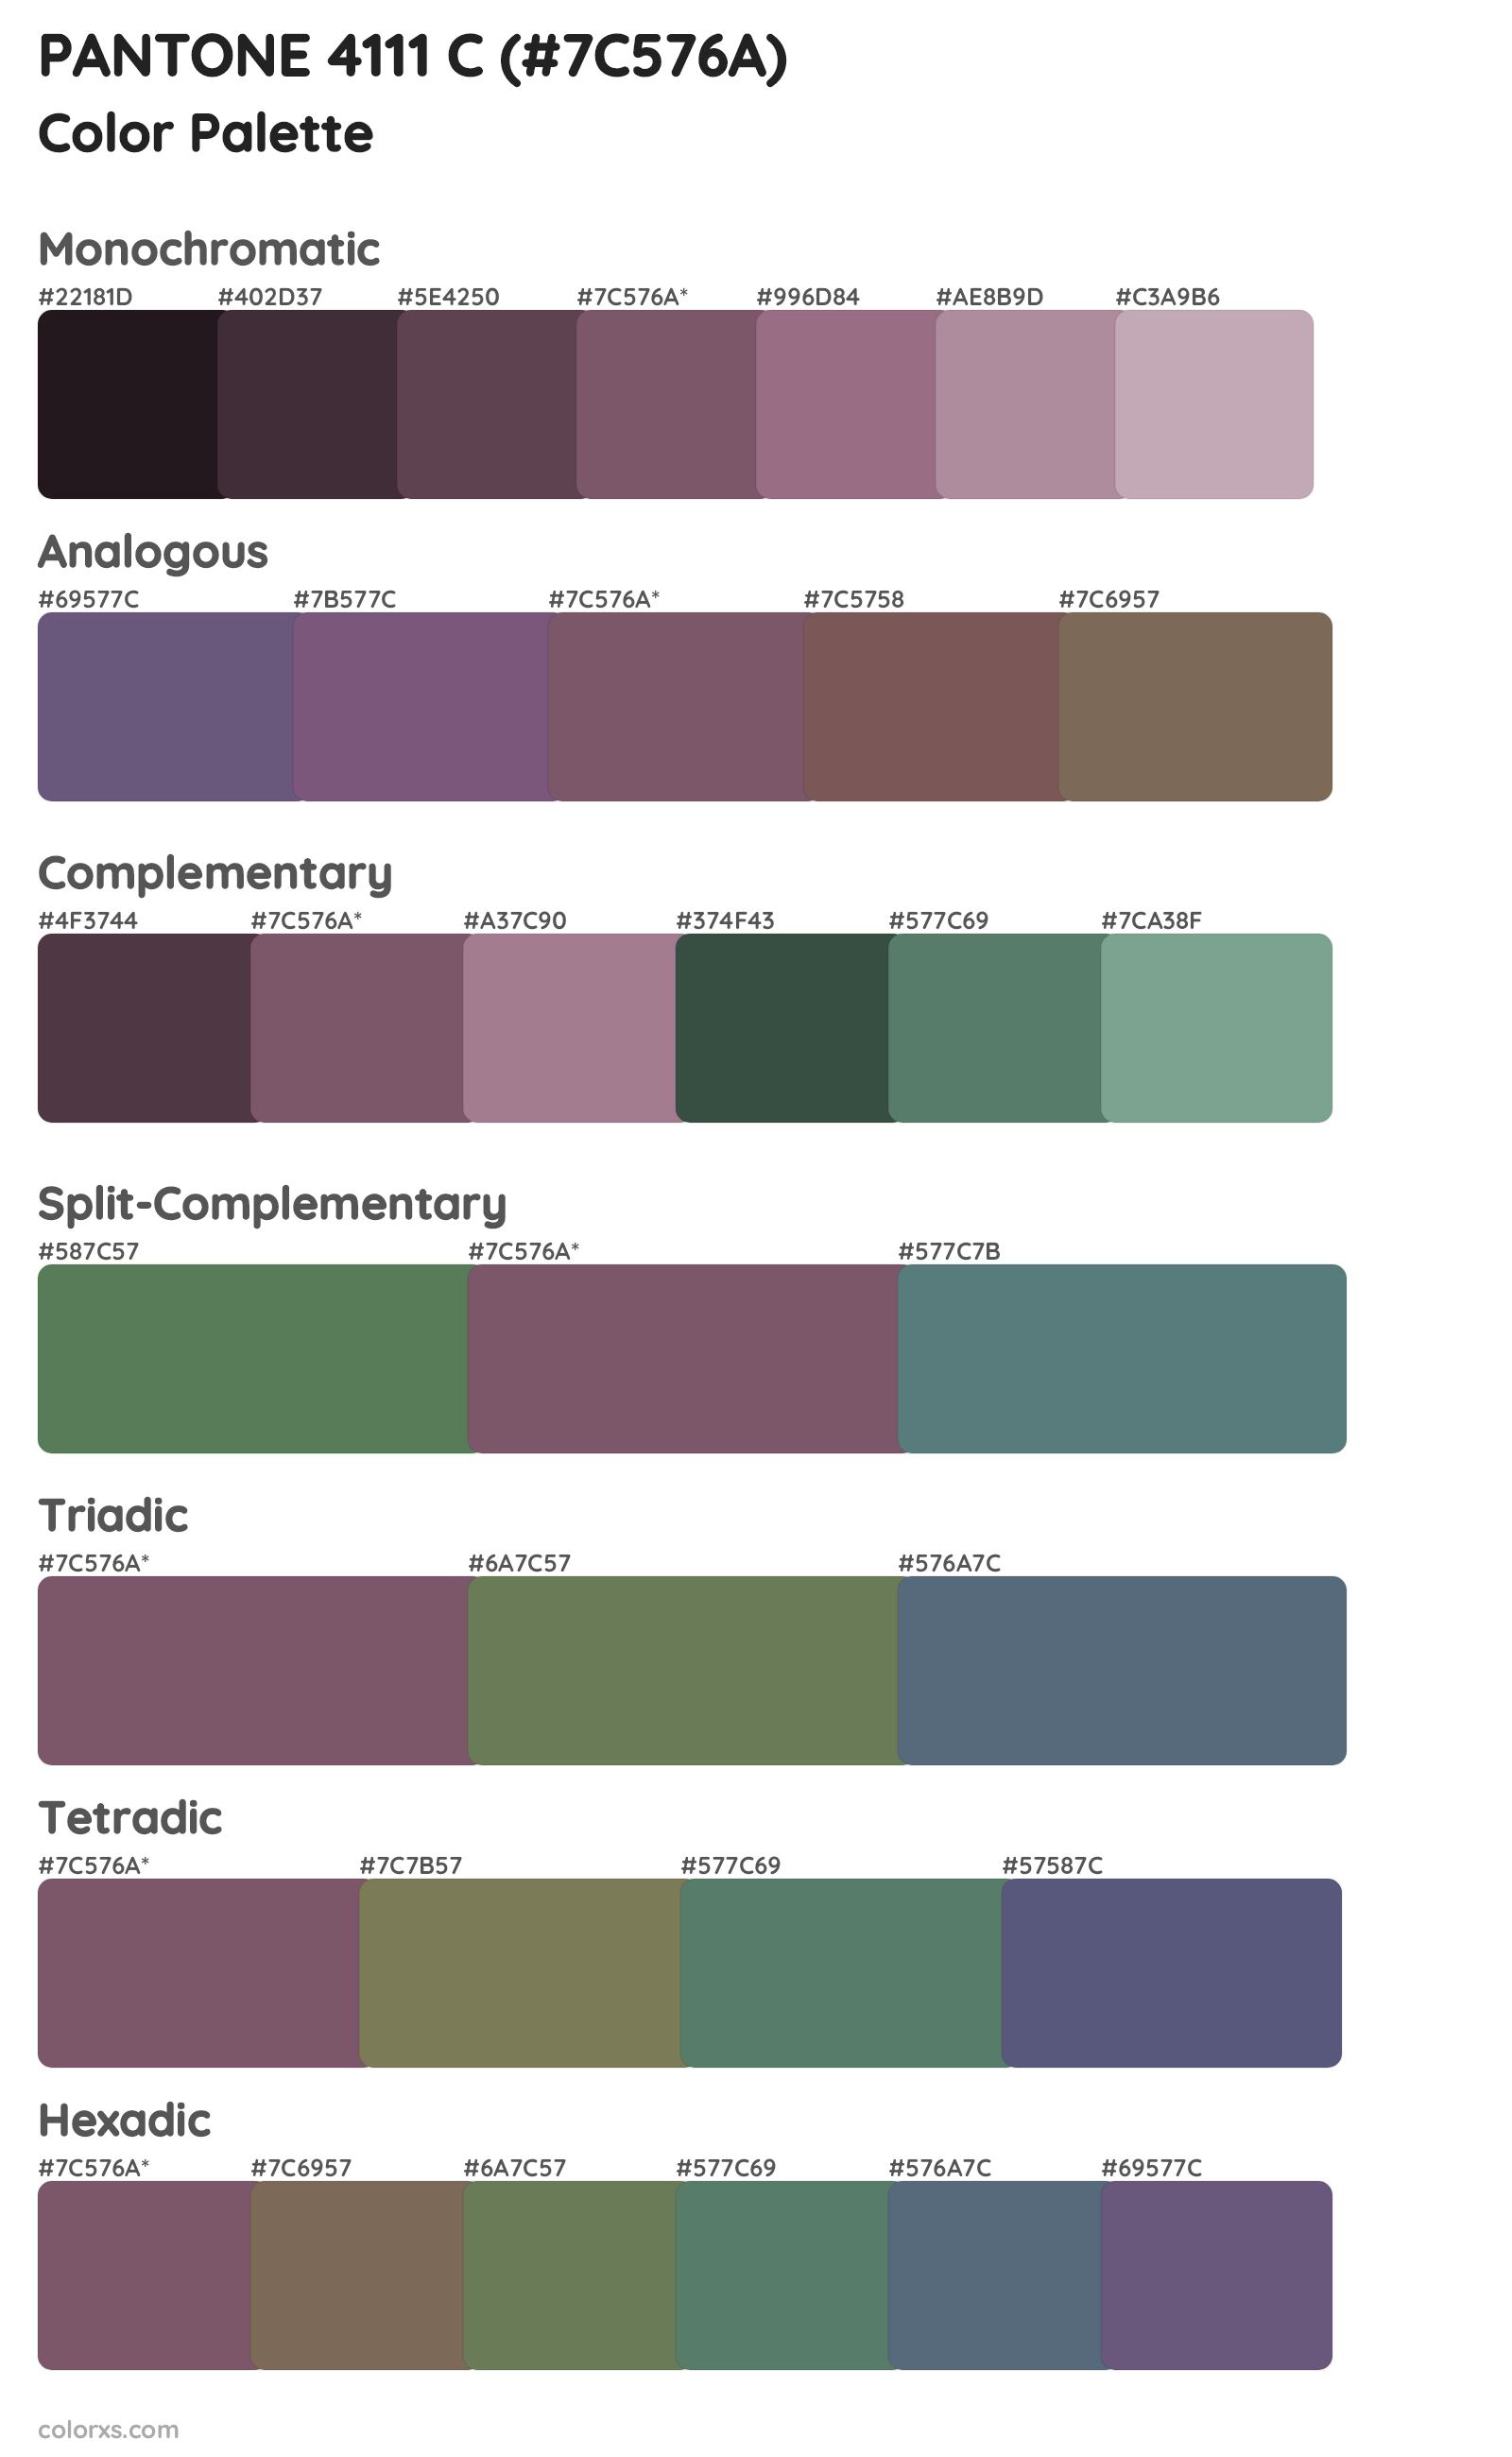 PANTONE 4111 C Color Scheme Palettes